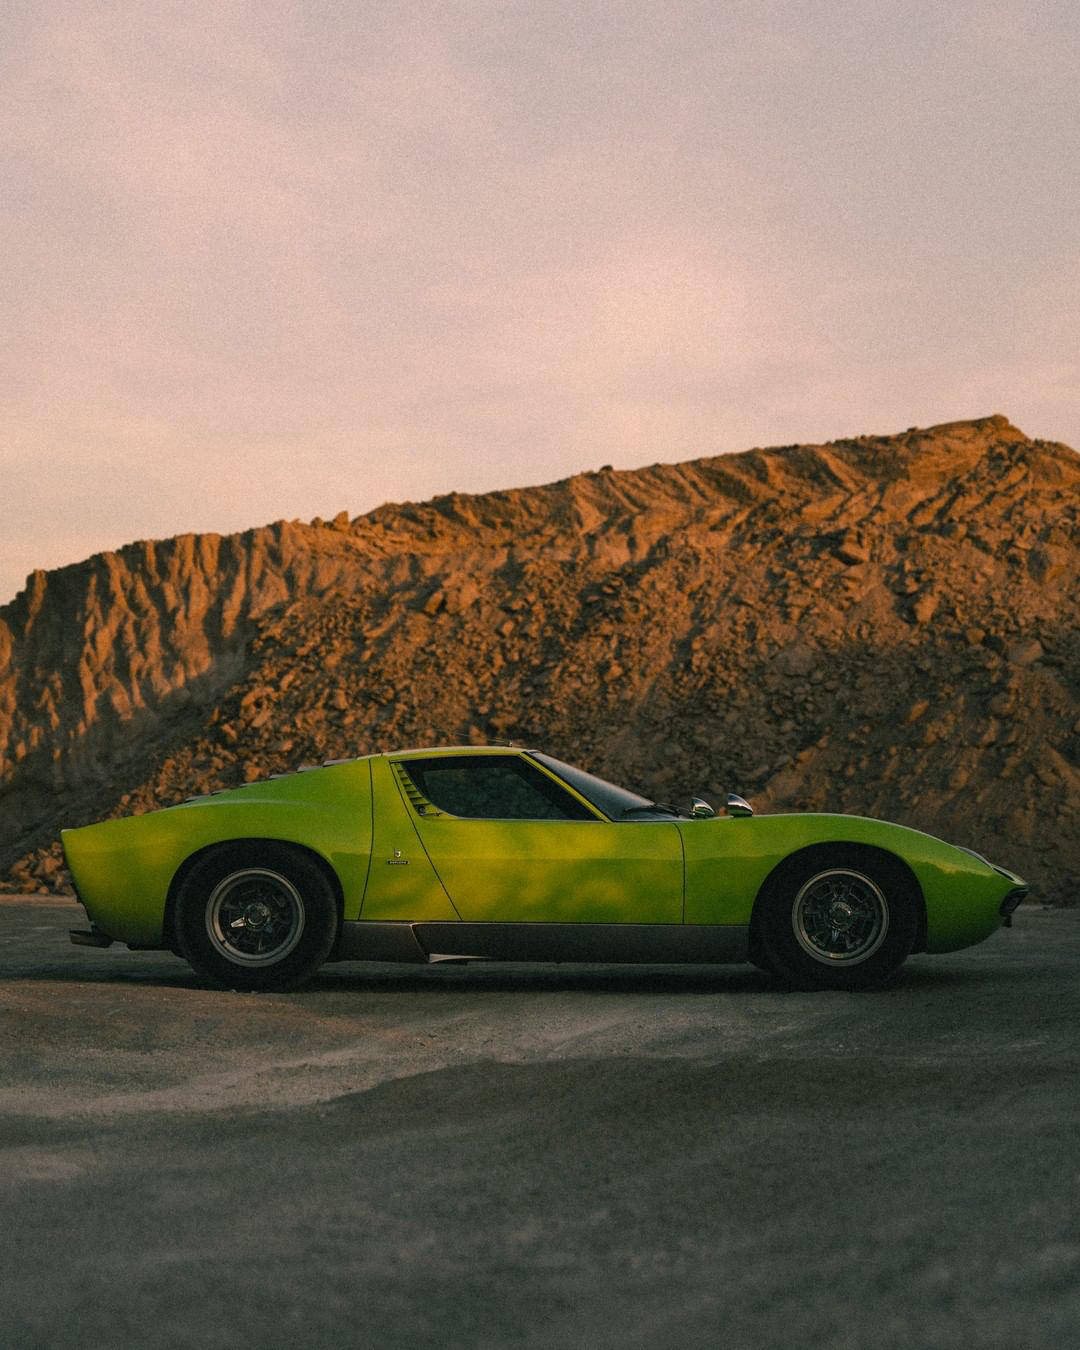 Lamborghini - Asphalt to asphalt, dust to dust